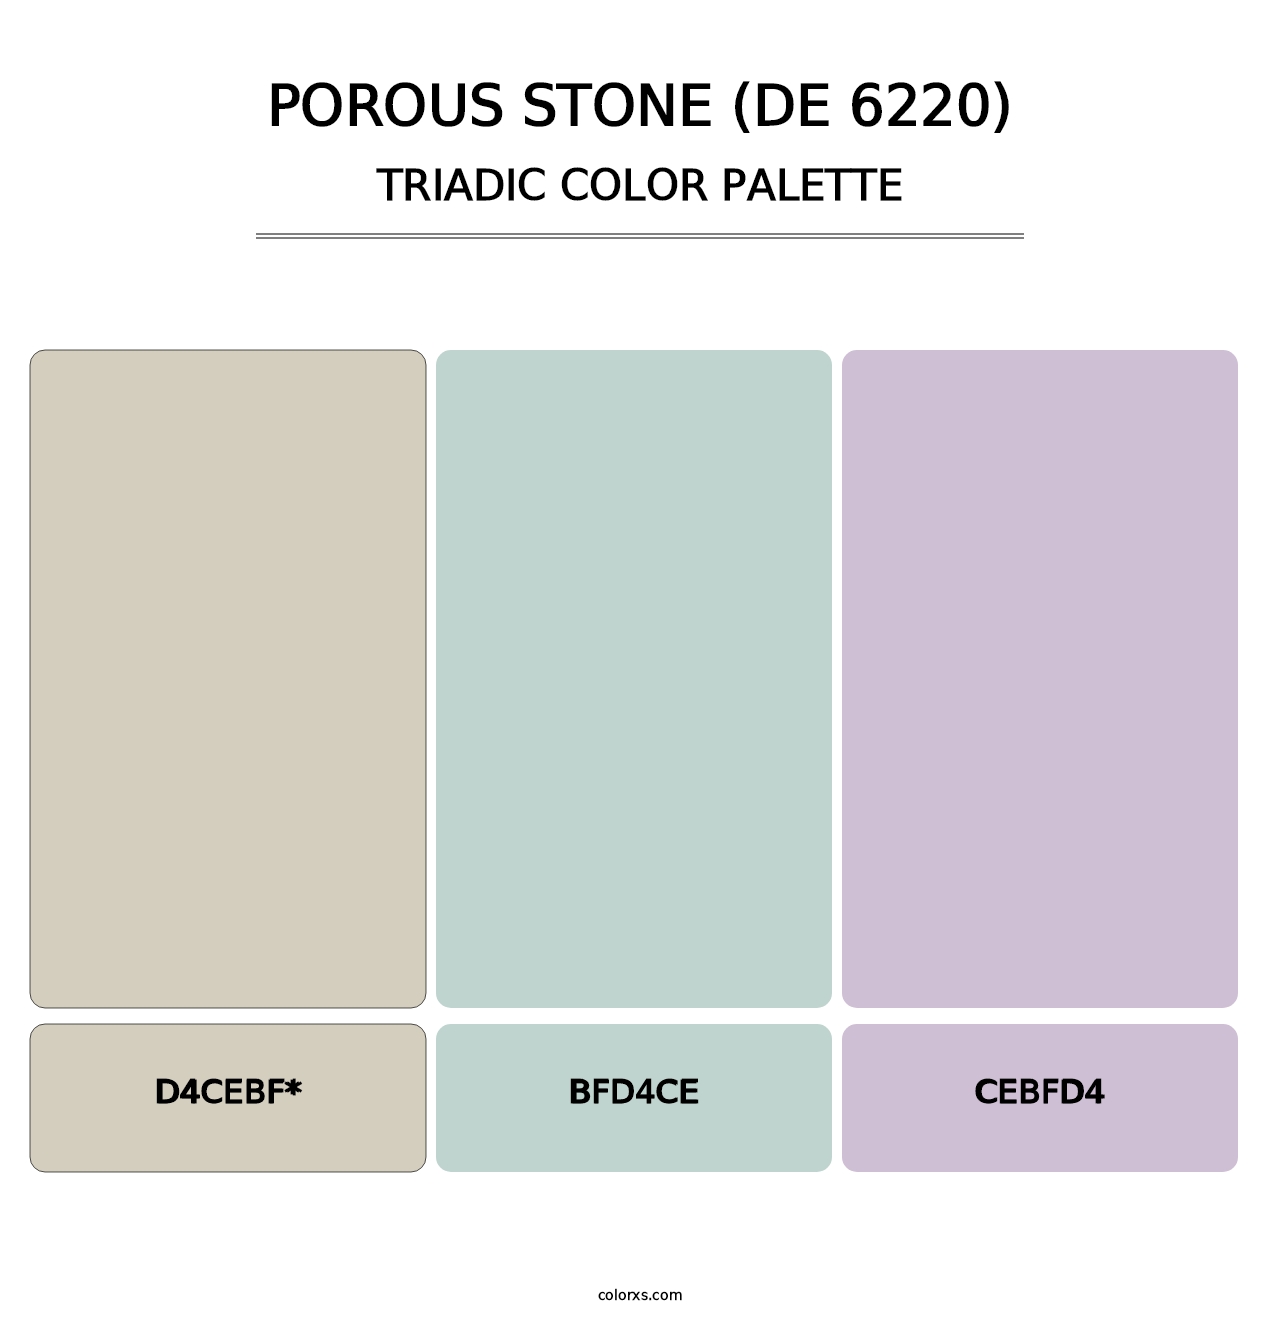 Porous Stone (DE 6220) - Triadic Color Palette